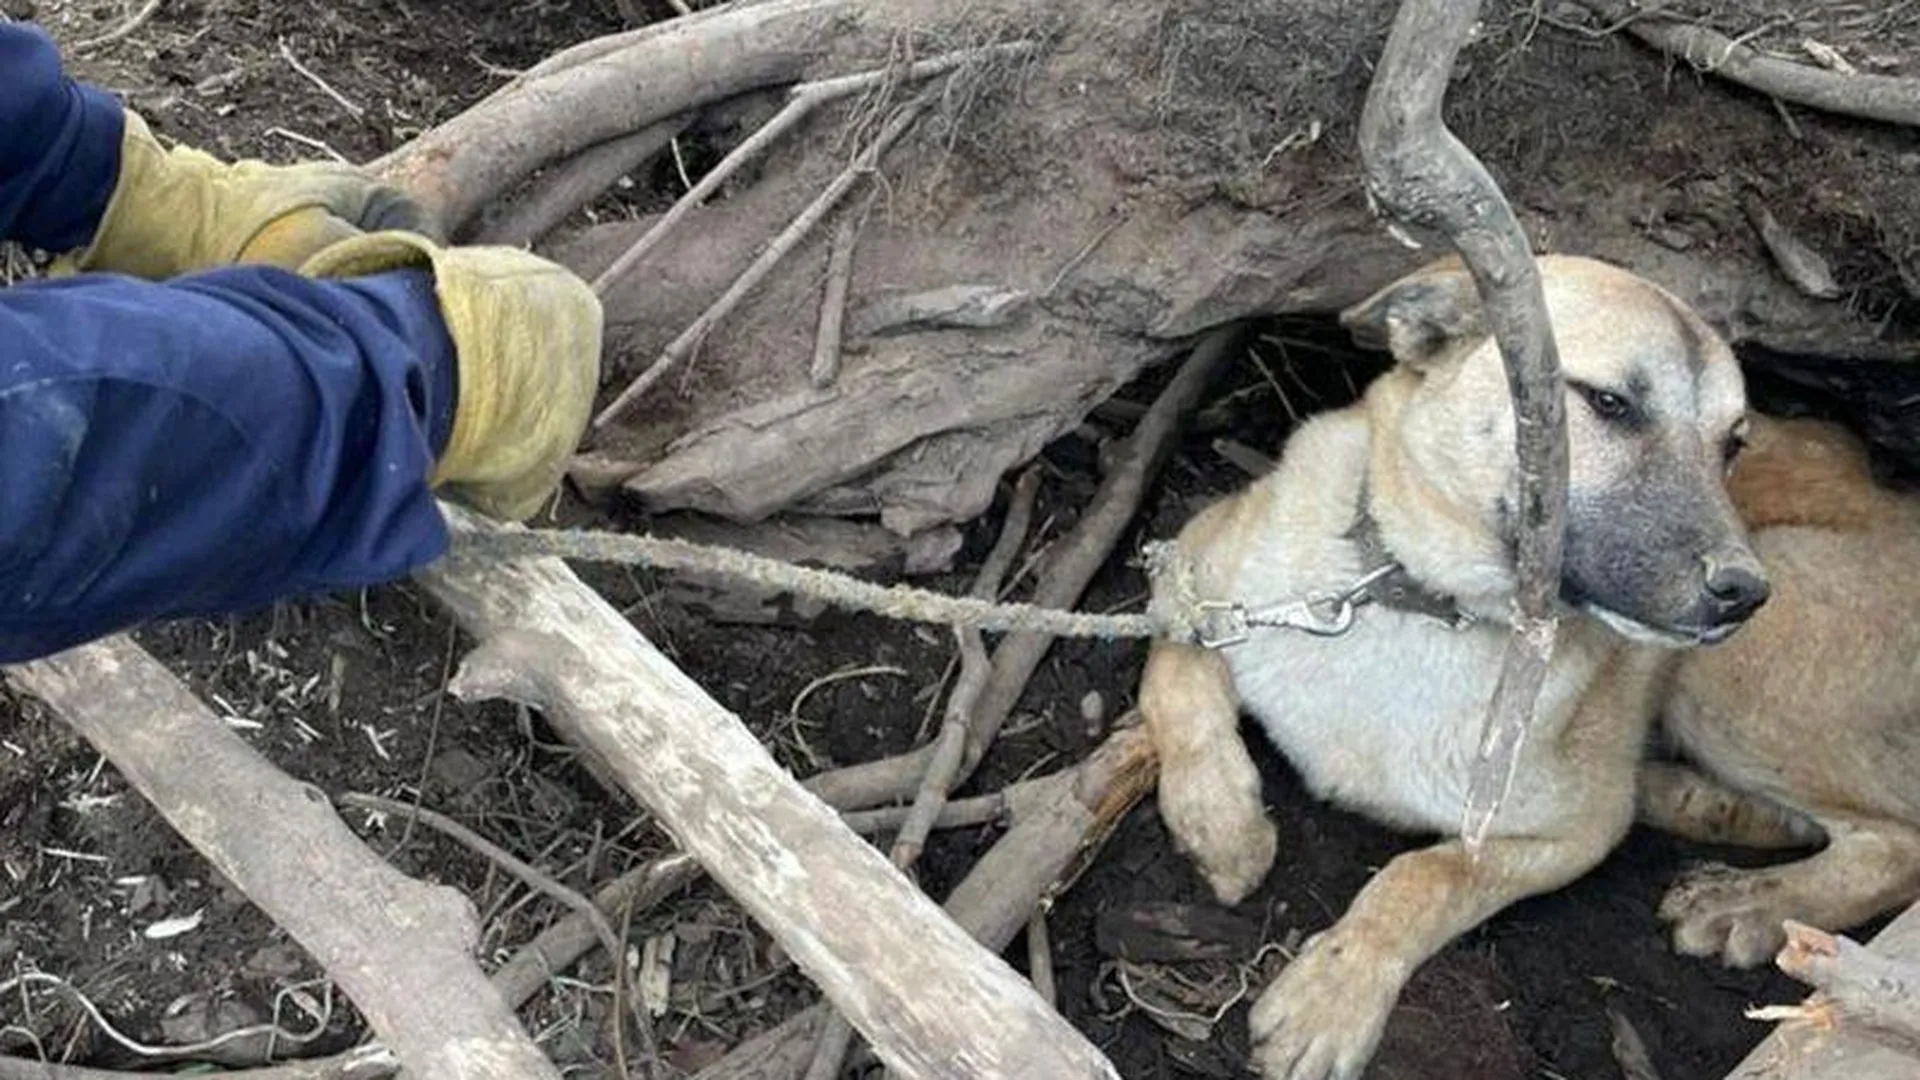 Сотрудники «Мособлпожспаса» спасли собаку, оставленную на привязи без еды и воды